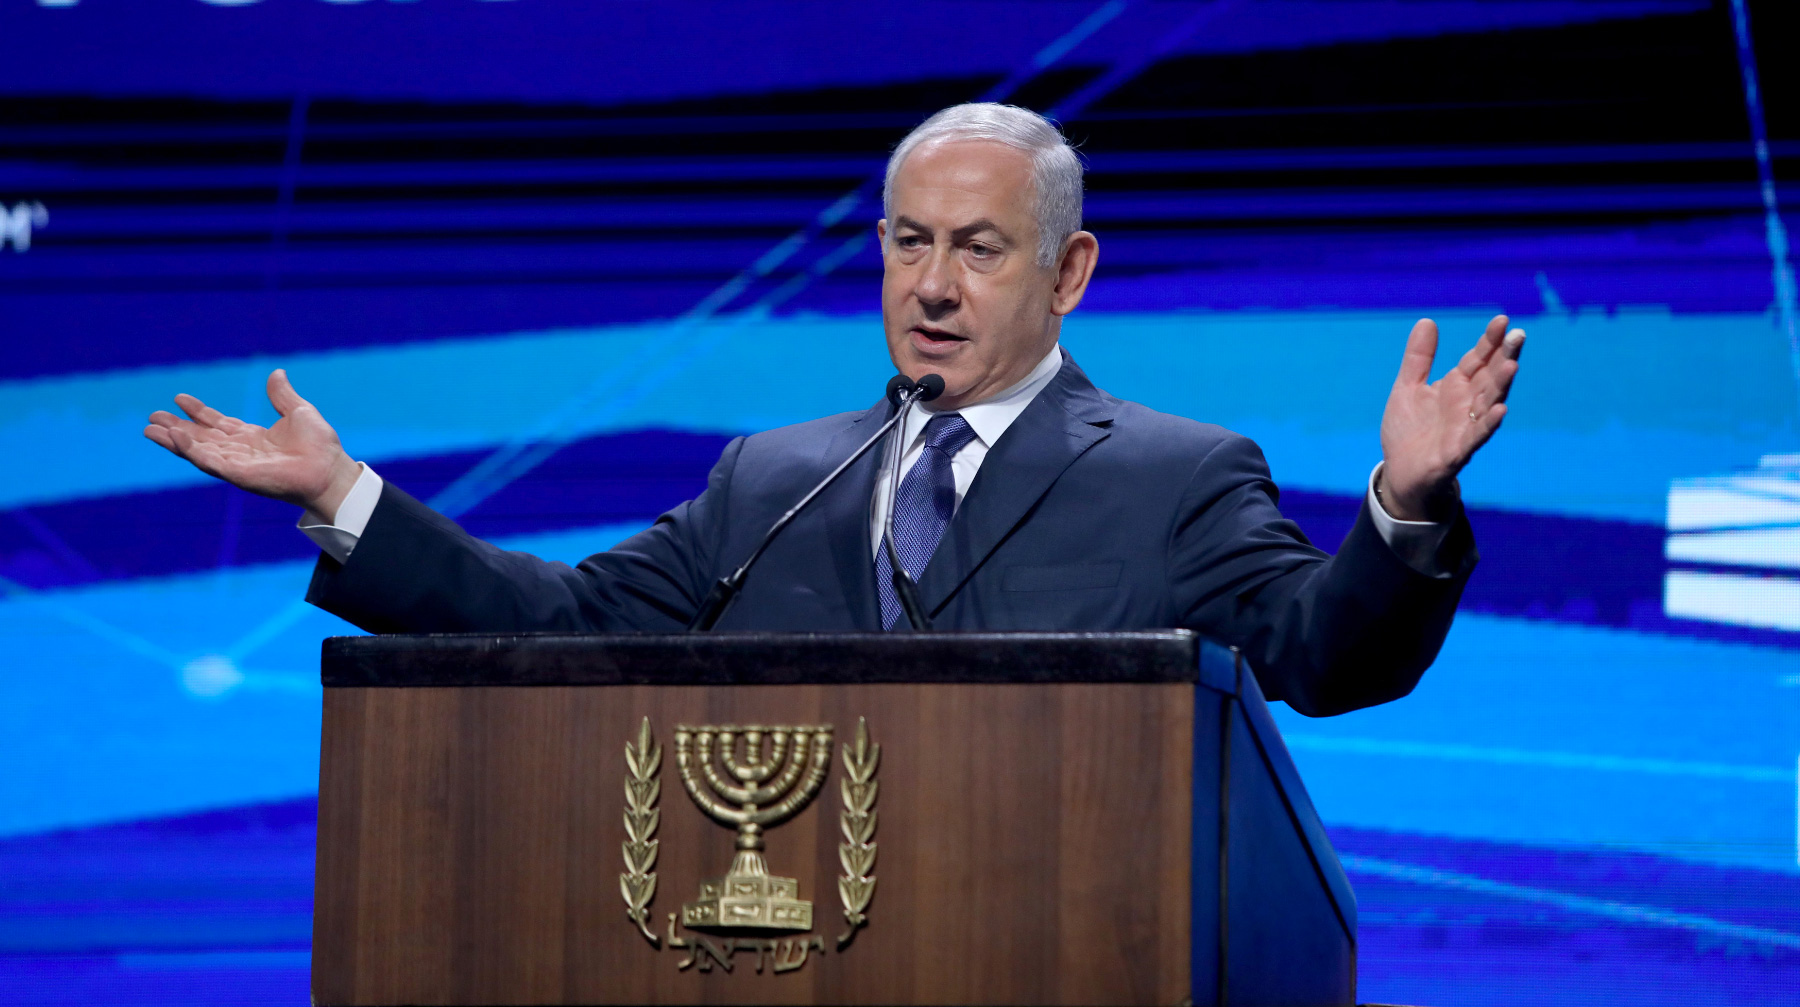 В свою очередь израильский премьер-министр назвал выдвинутые обвинения бездоказательными Биньямин Нетаньяху